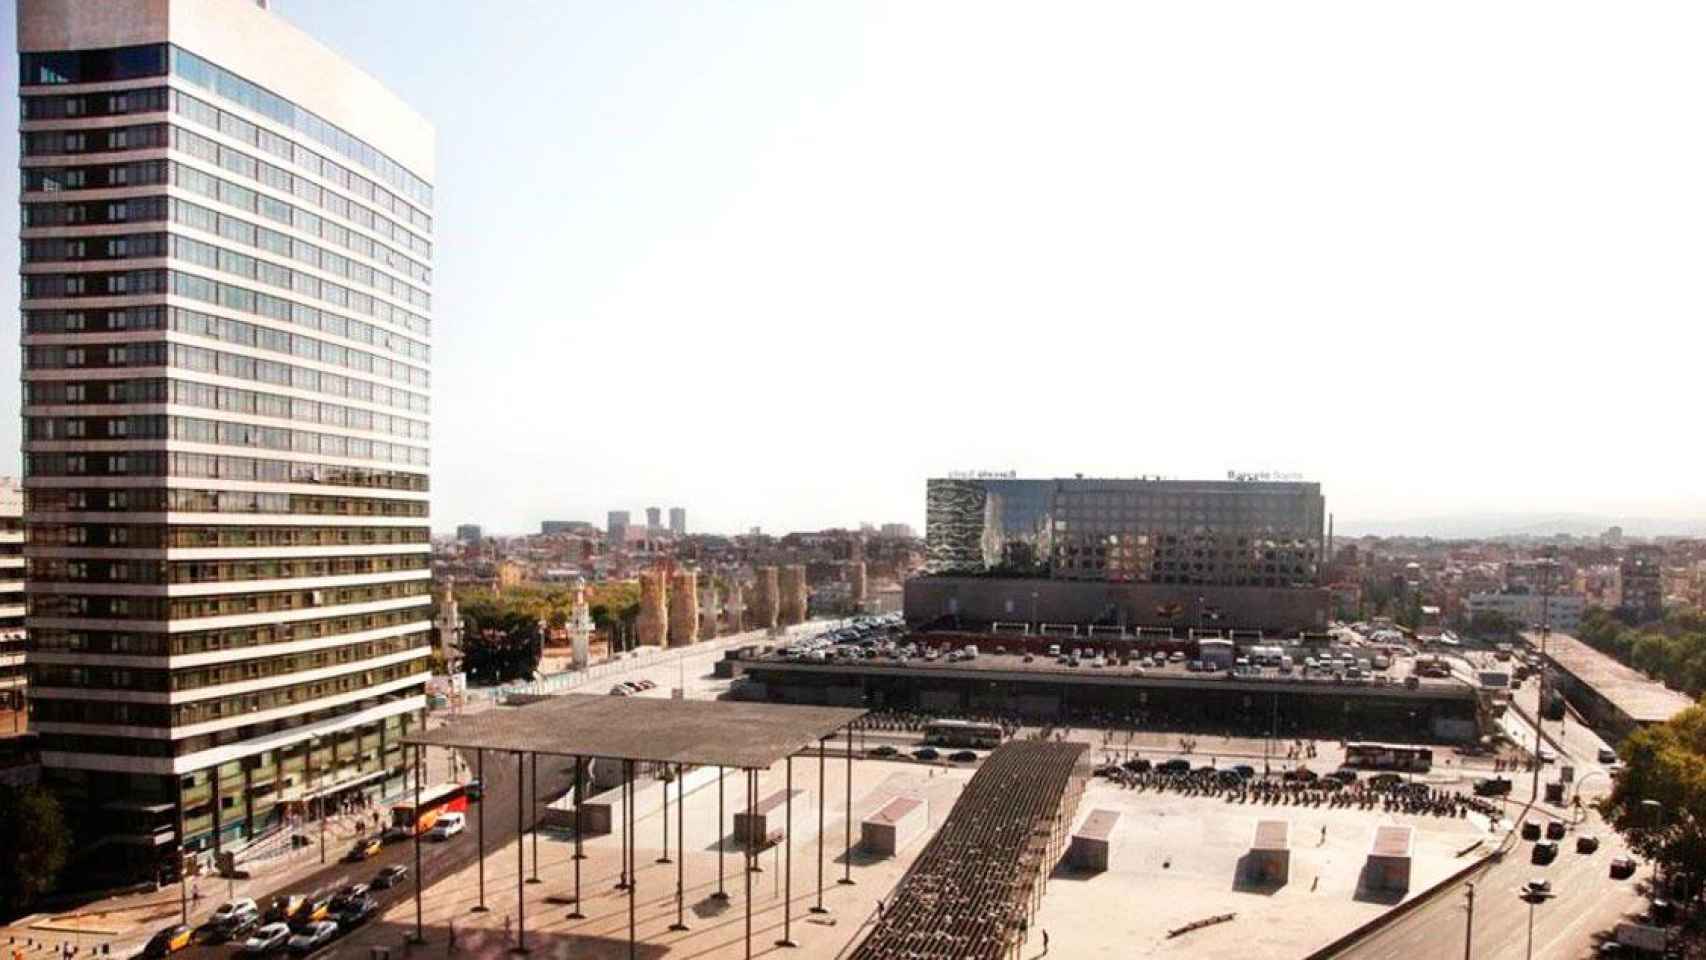 Vista aérea del Hotel Nobu Barcelona, con la Estación de Barcelona-Sants al fondo / CG